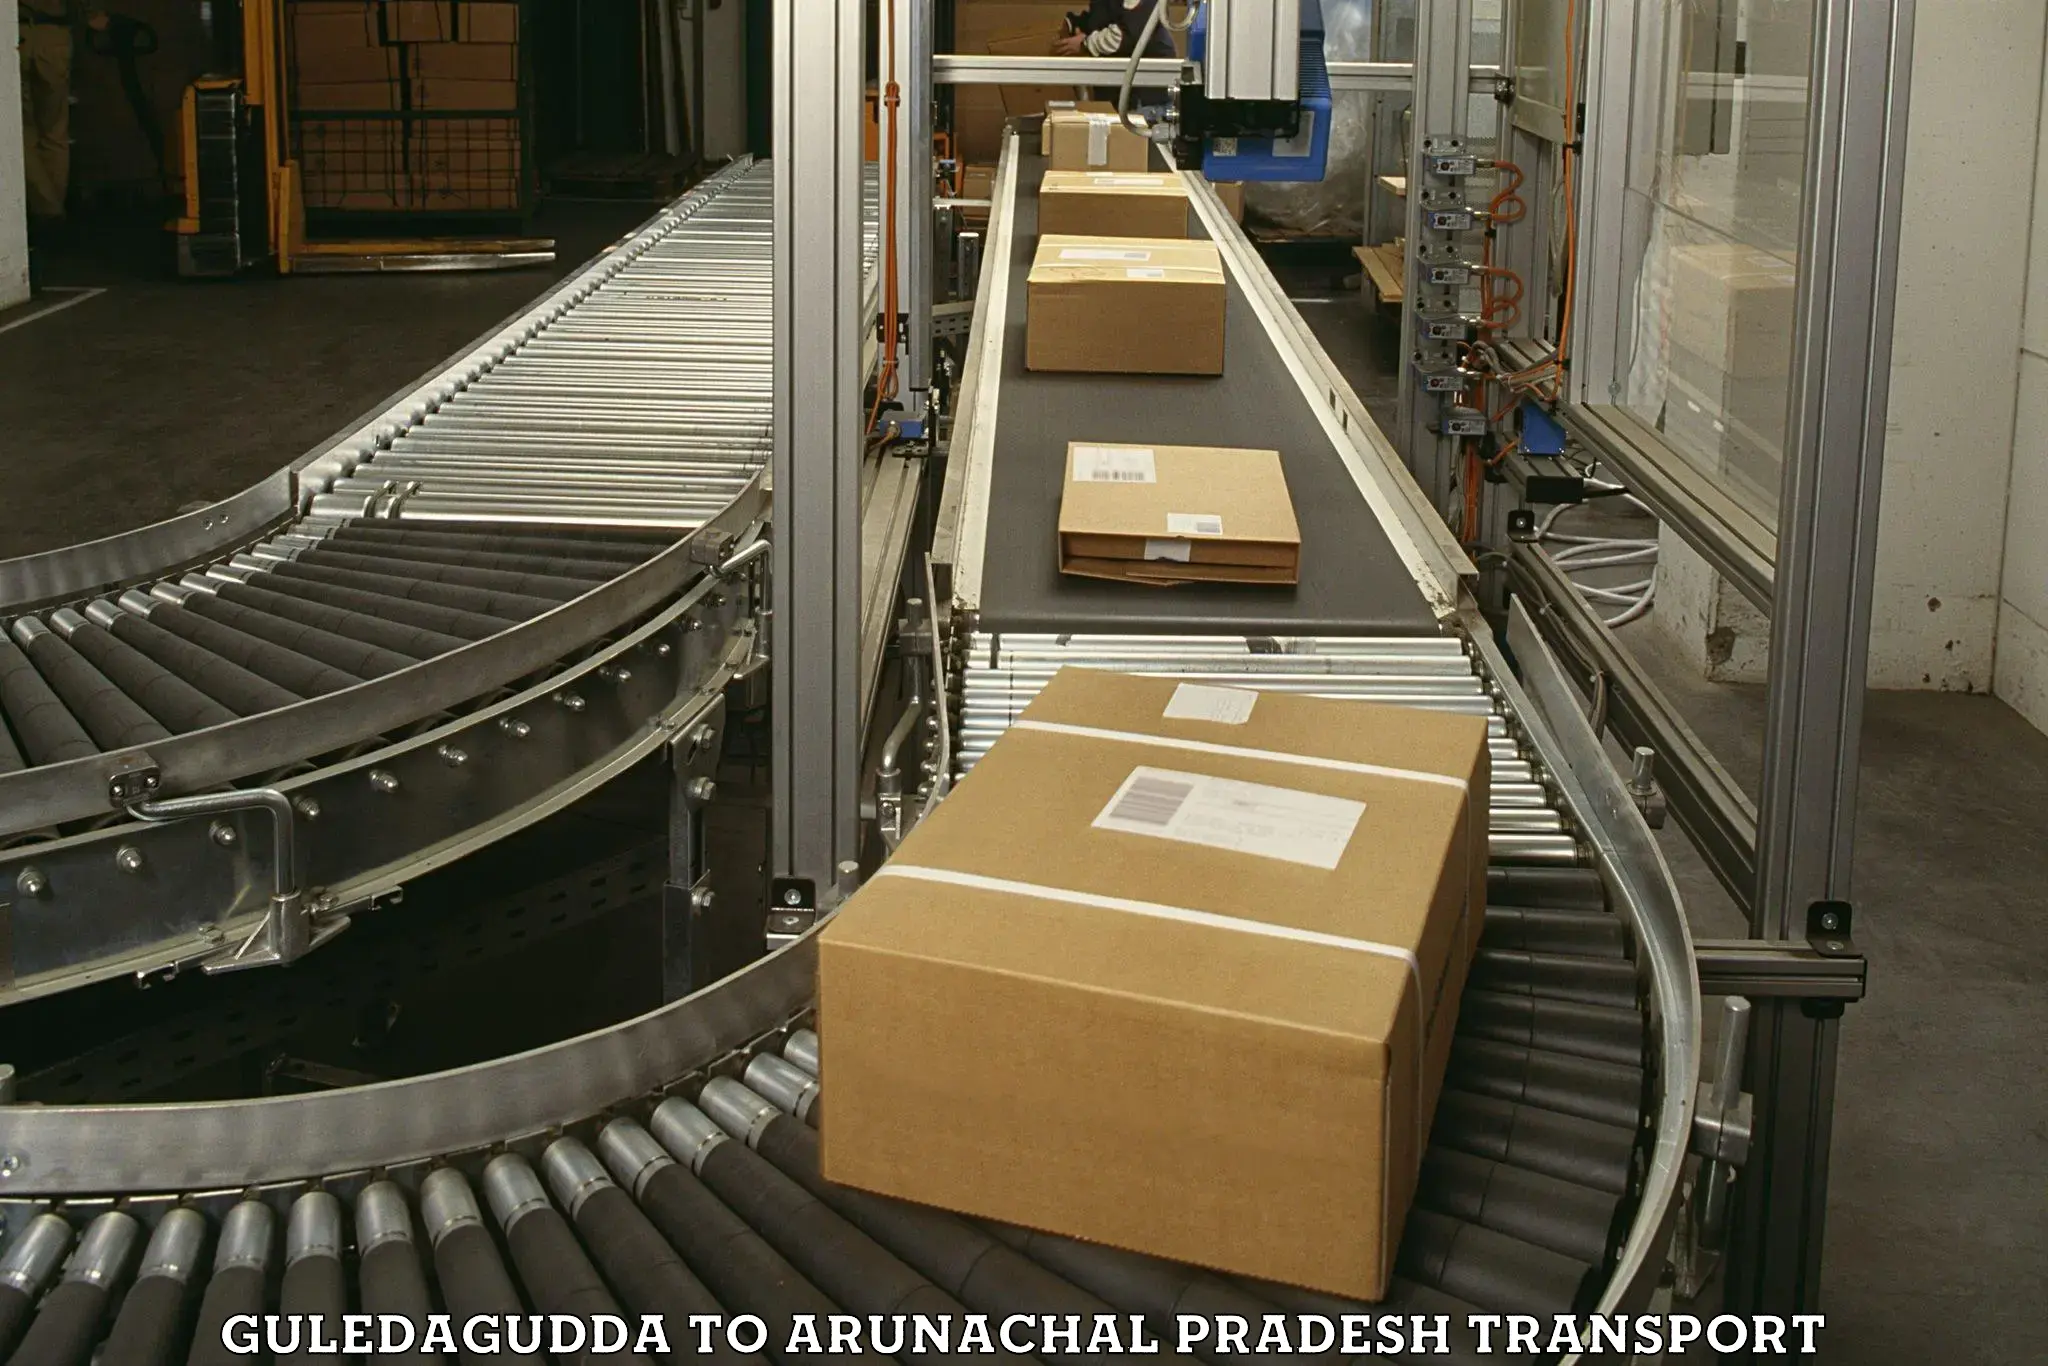 Goods delivery service Guledagudda to Arunachal Pradesh